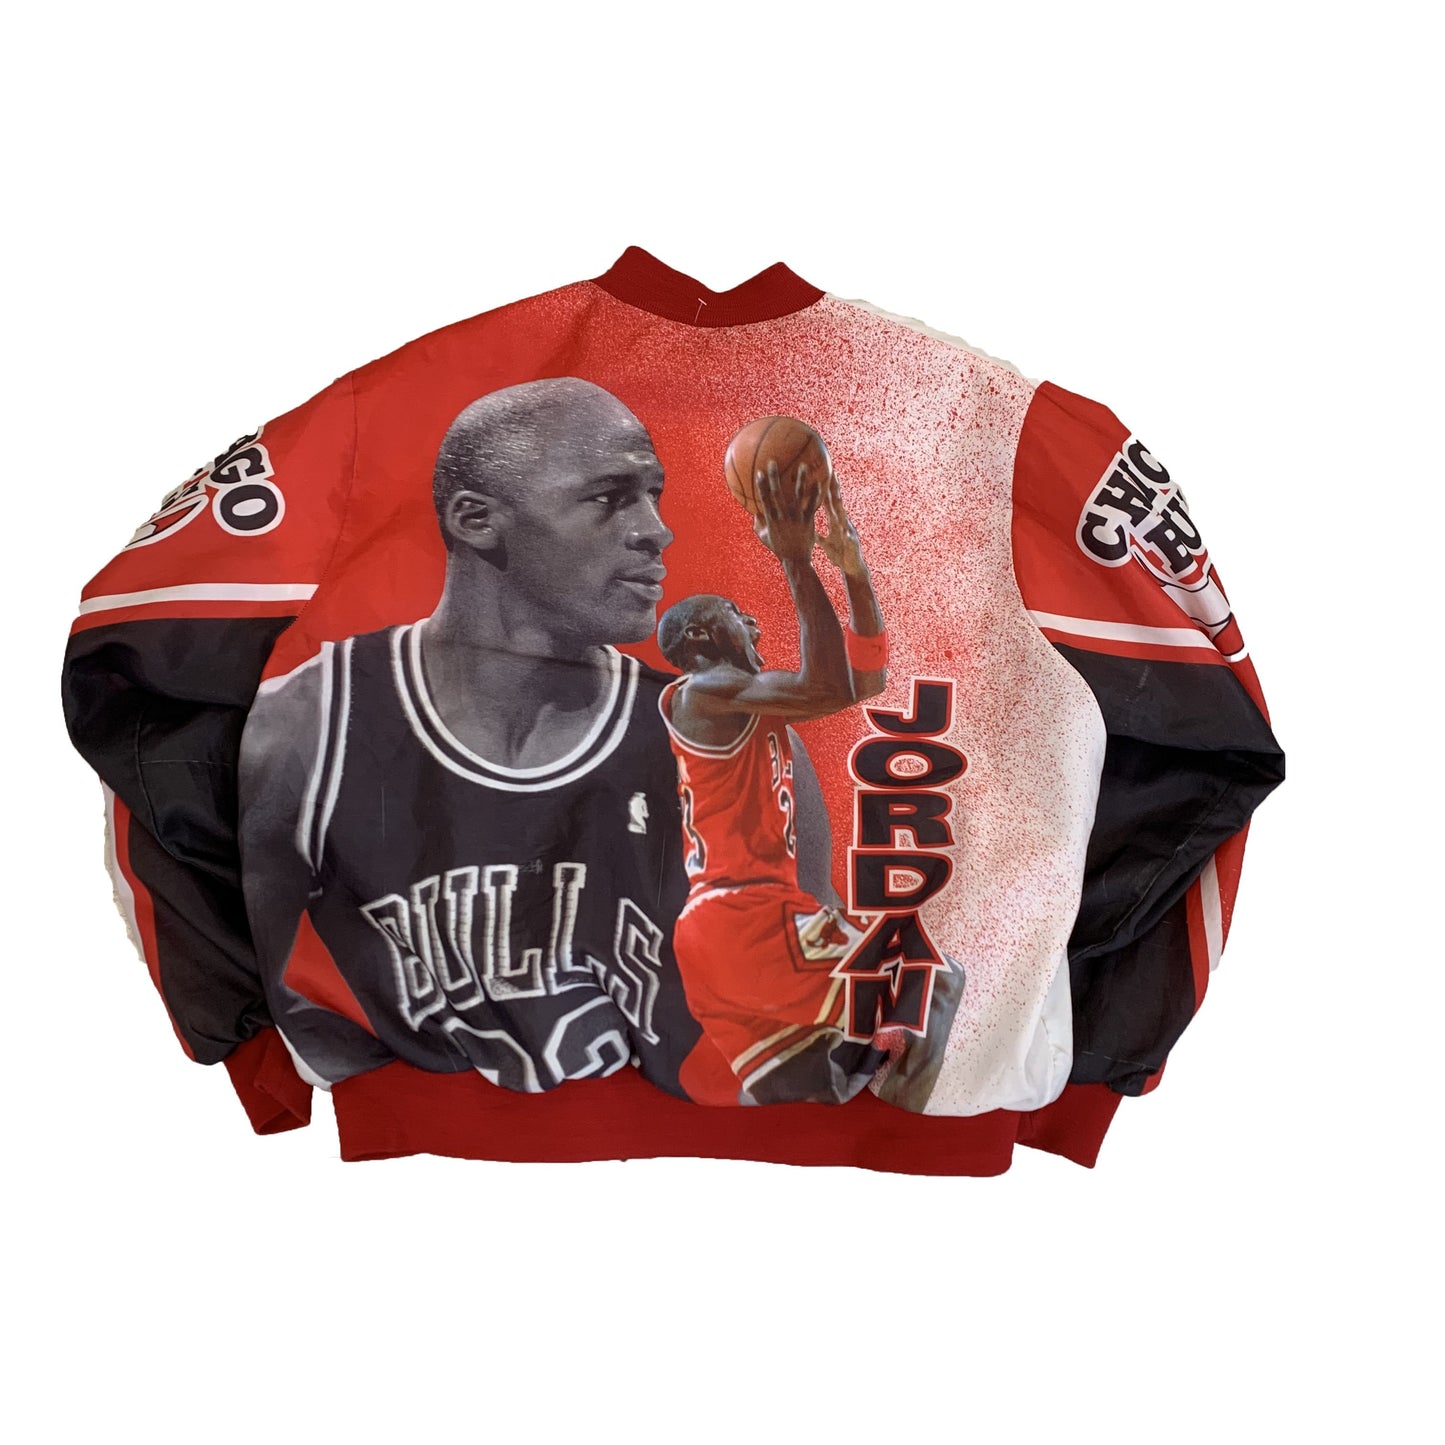 1990s Chalkline All-Over Print Chicago Bulls Satin Jacket